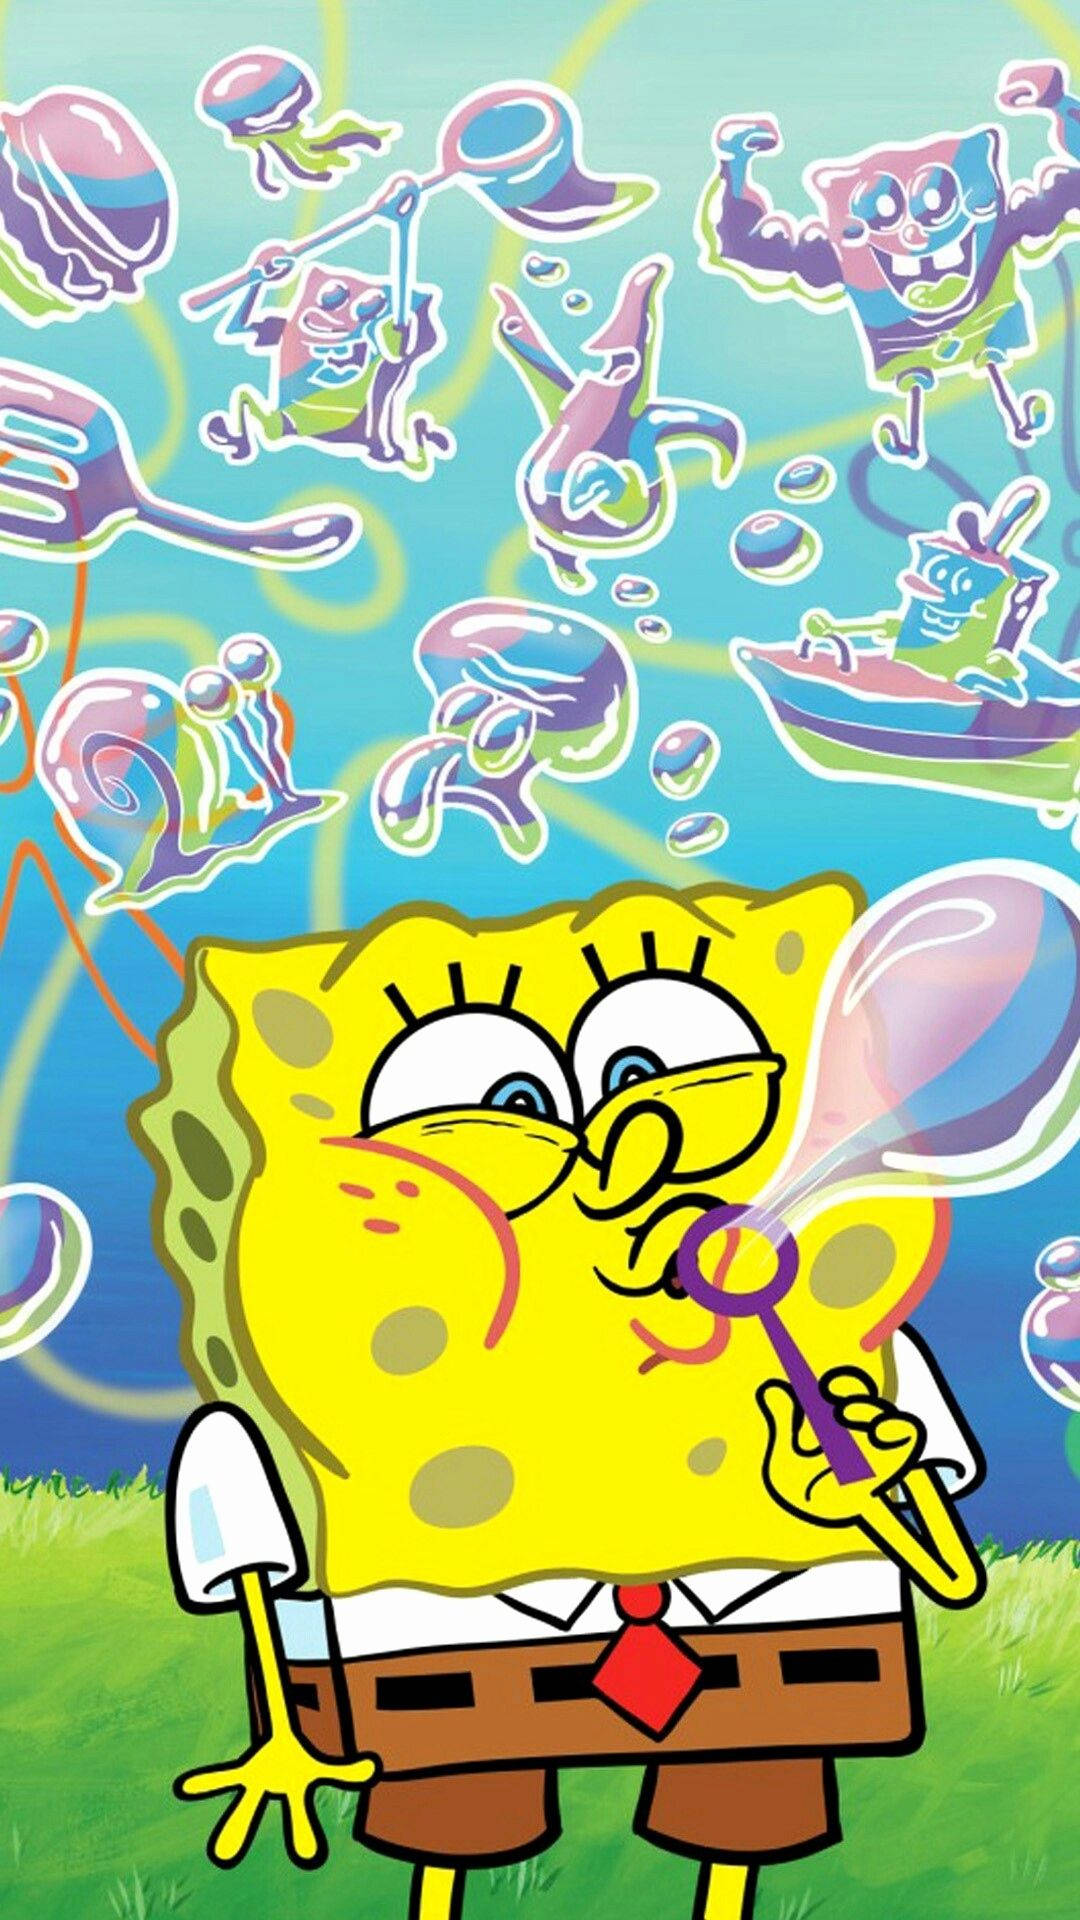 Sjov Spongebob Squarepants som laver bobler Wallpaper